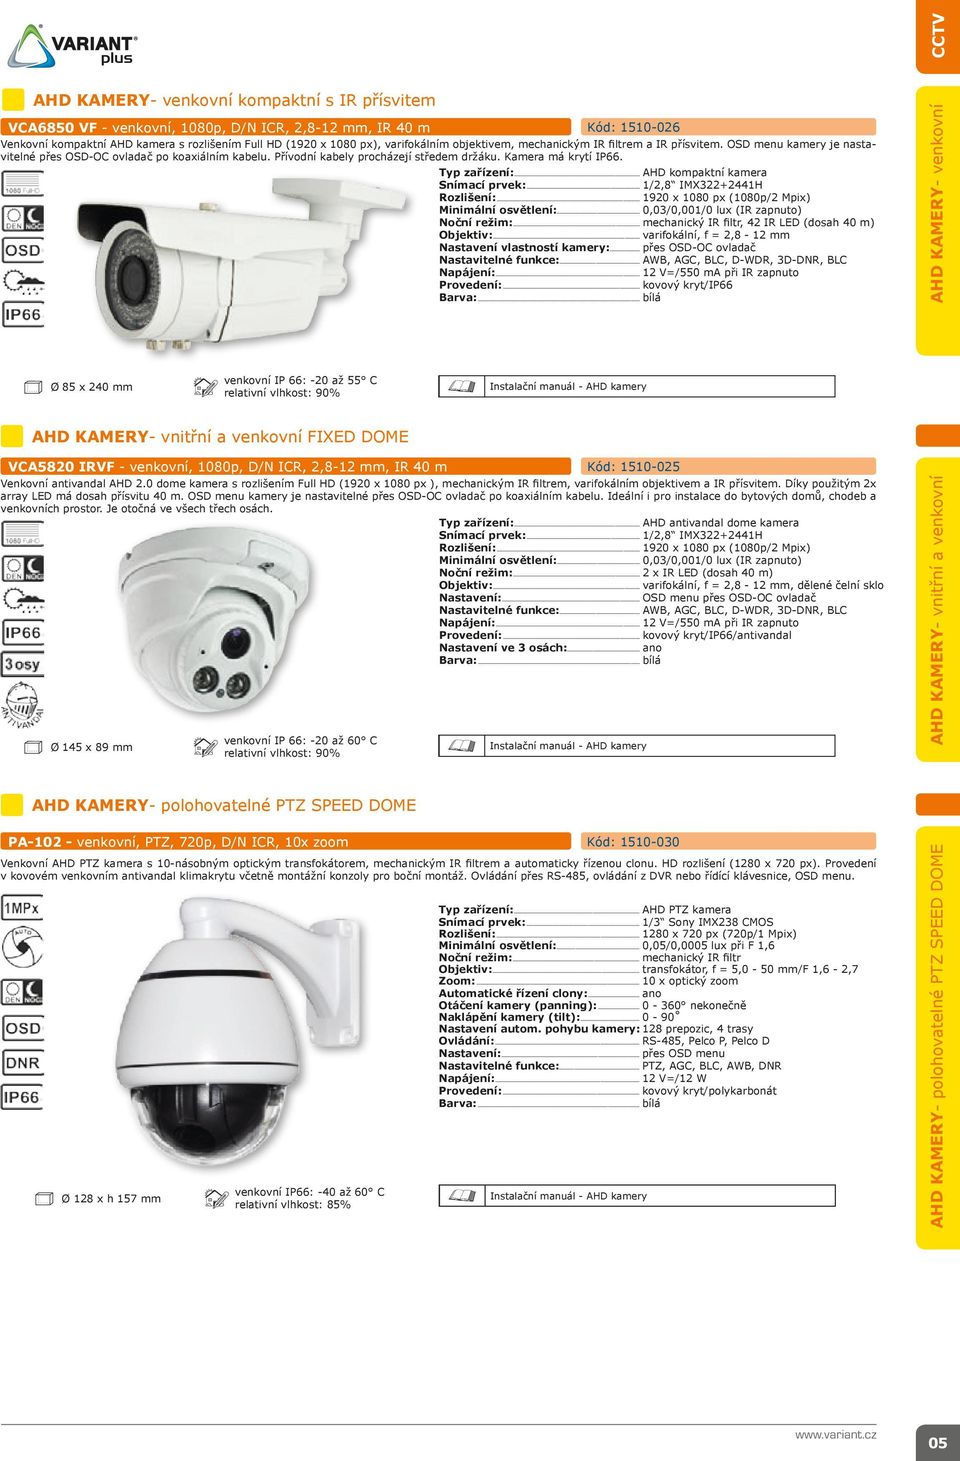 Typ zařízení:... AHD kompaktní kamera Snímací prvek:... 1/2,8 IMX322+2441H Rozlišení:... 1920 x 1080 px (1080p/2 Mpix) Minimální osvětlení:... 0,03/0,001/0 lux (IR zapnuto) Noční režim:.